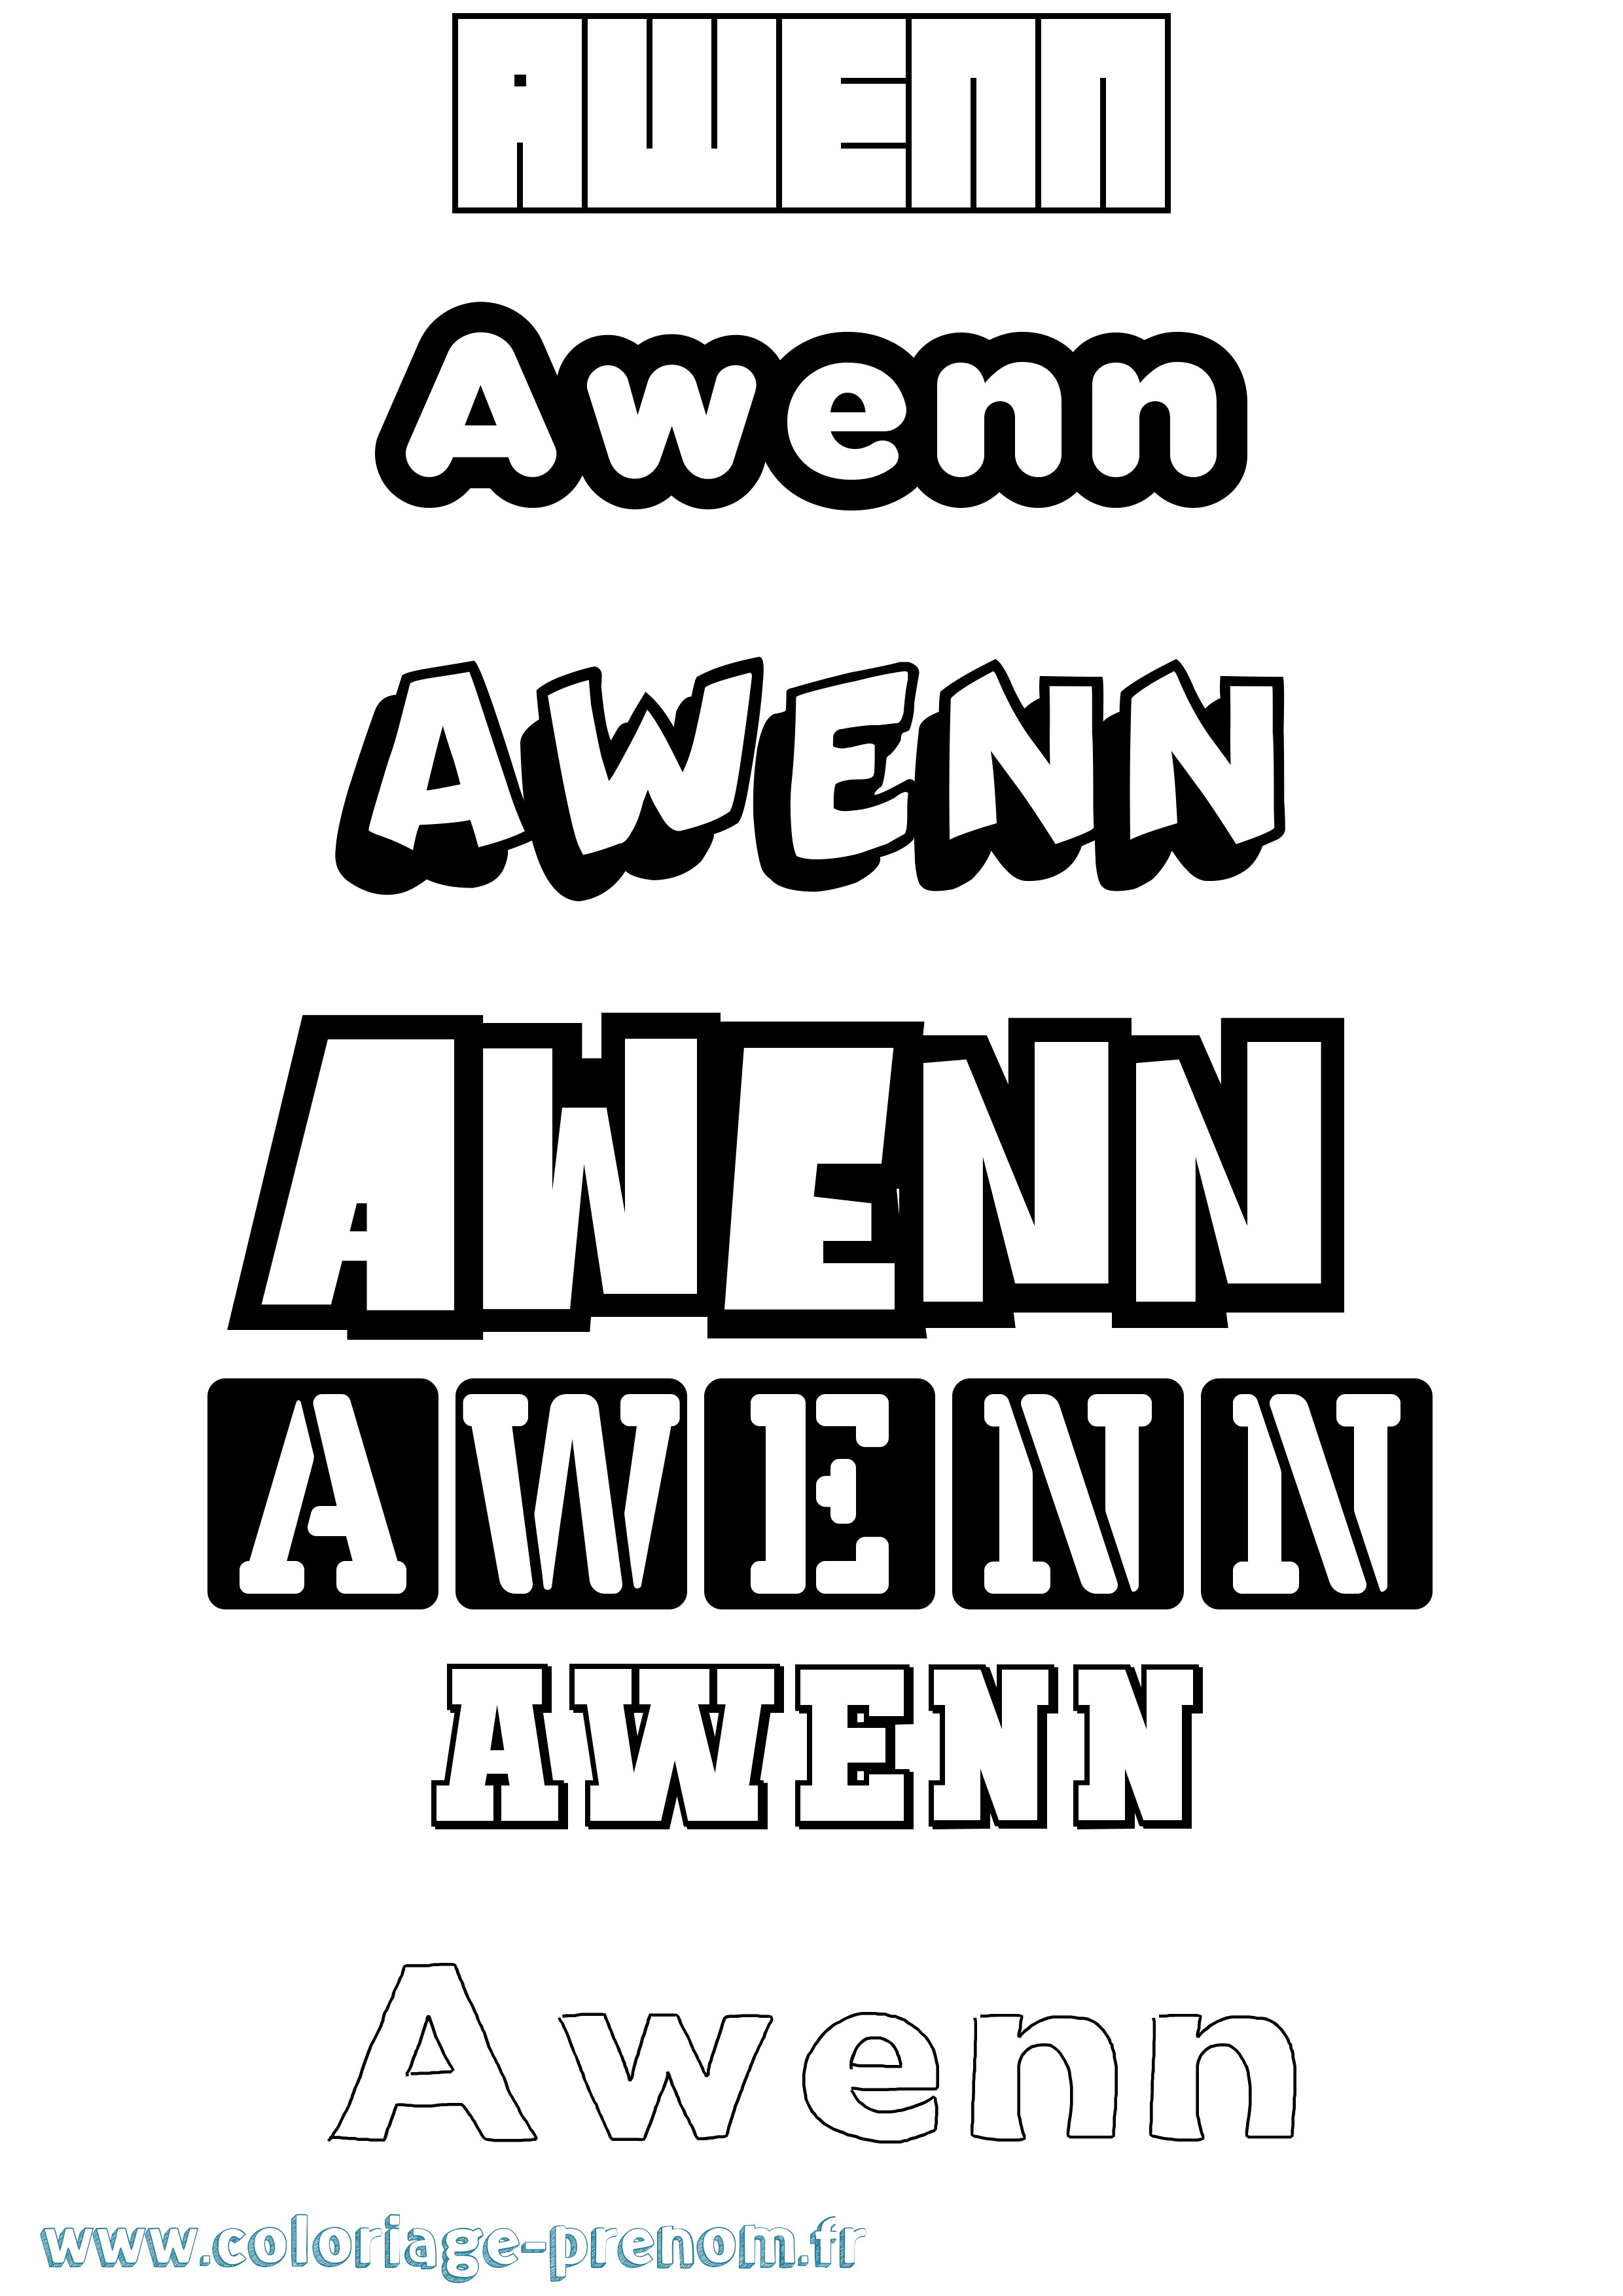 Coloriage prénom Awenn Simple